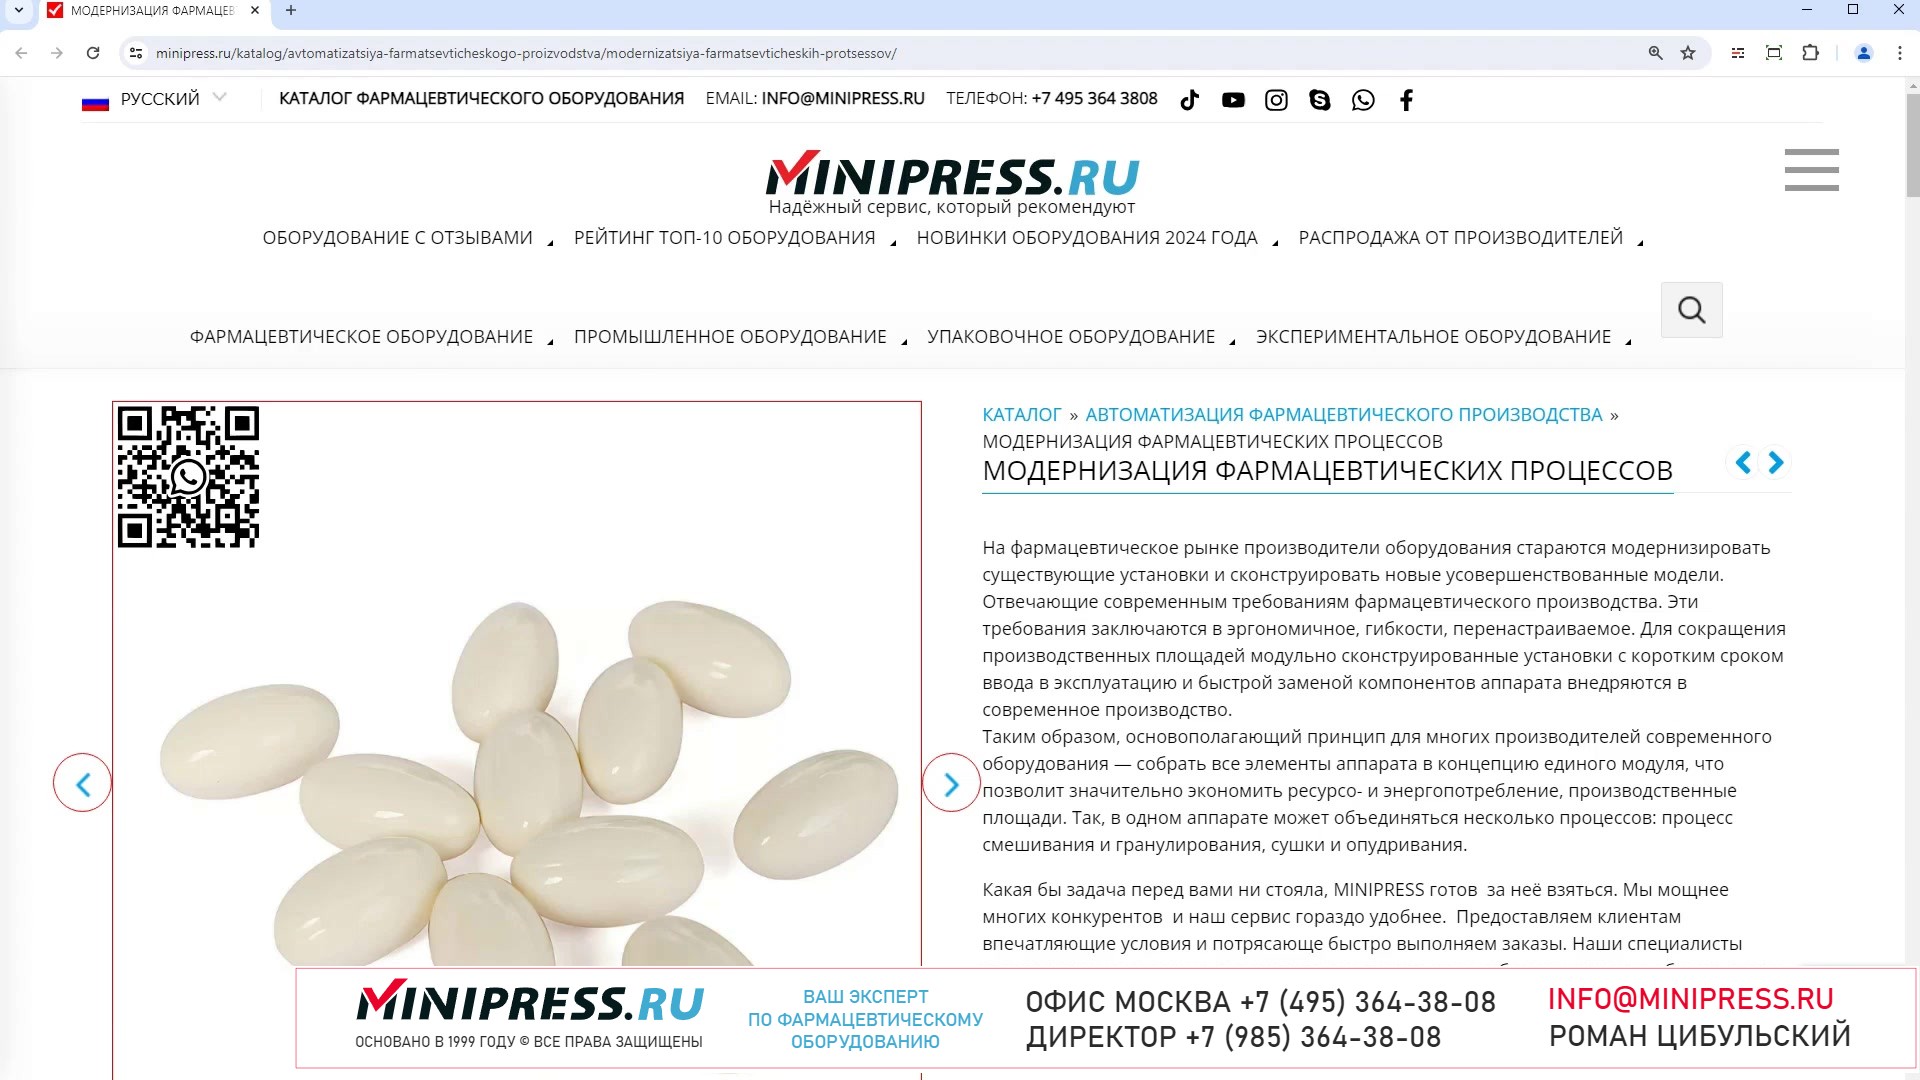 Minipress.ru Модернизация фармацевтических процессов